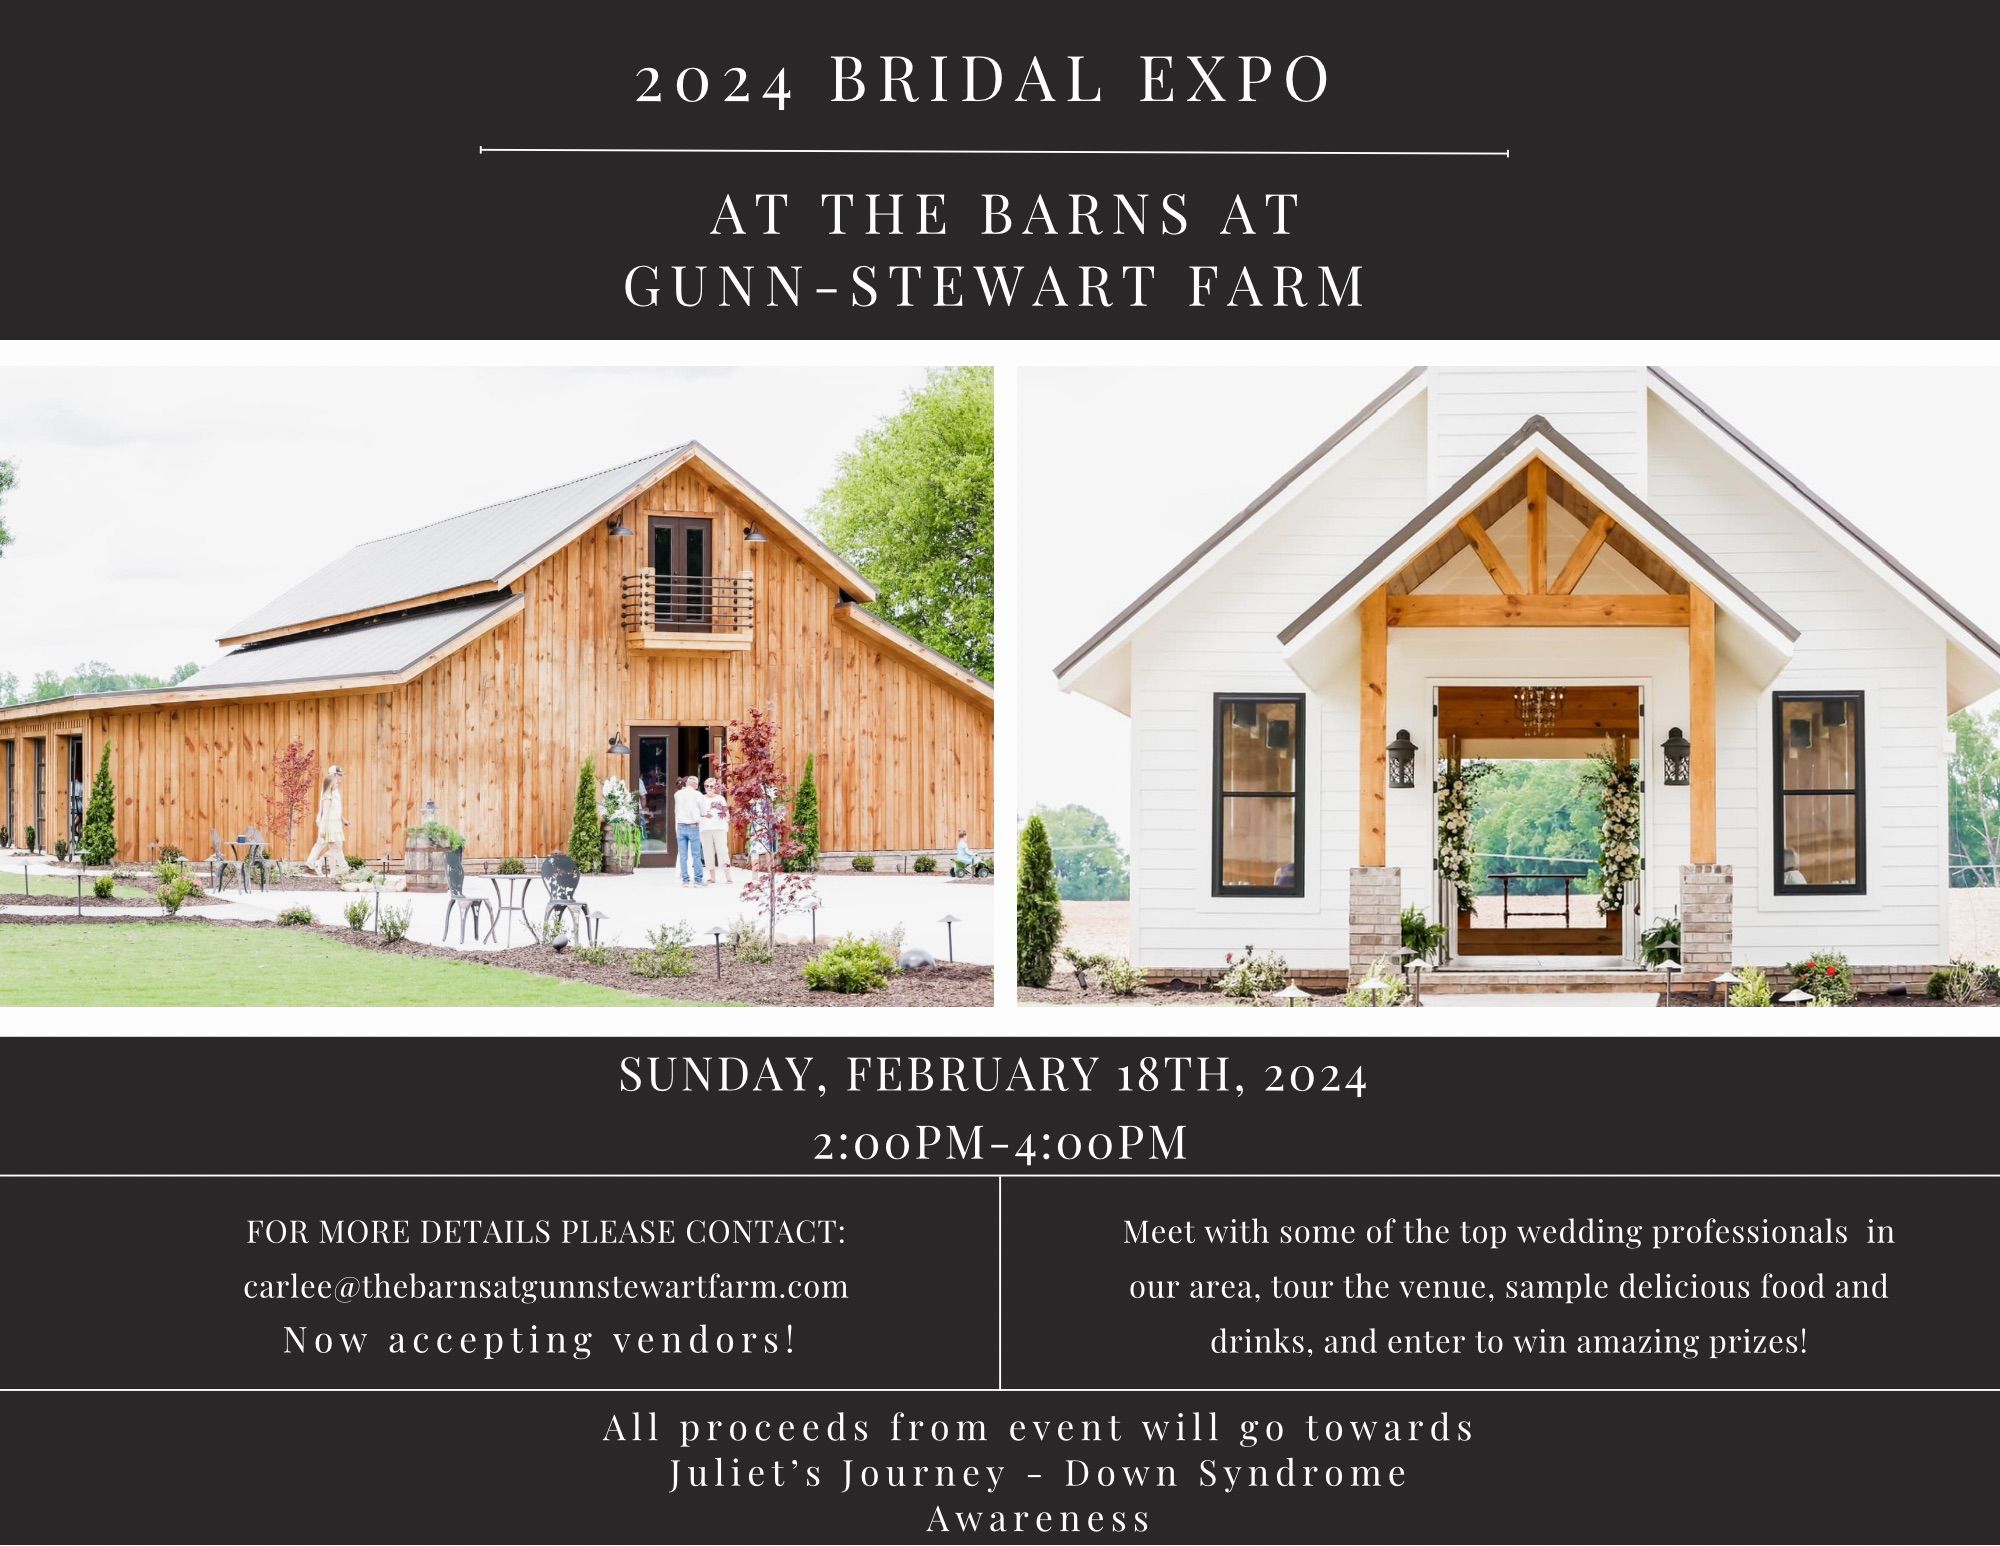 Image for post: 2024 Bridal Expo at The Barns at Gunn-Stewart Farm